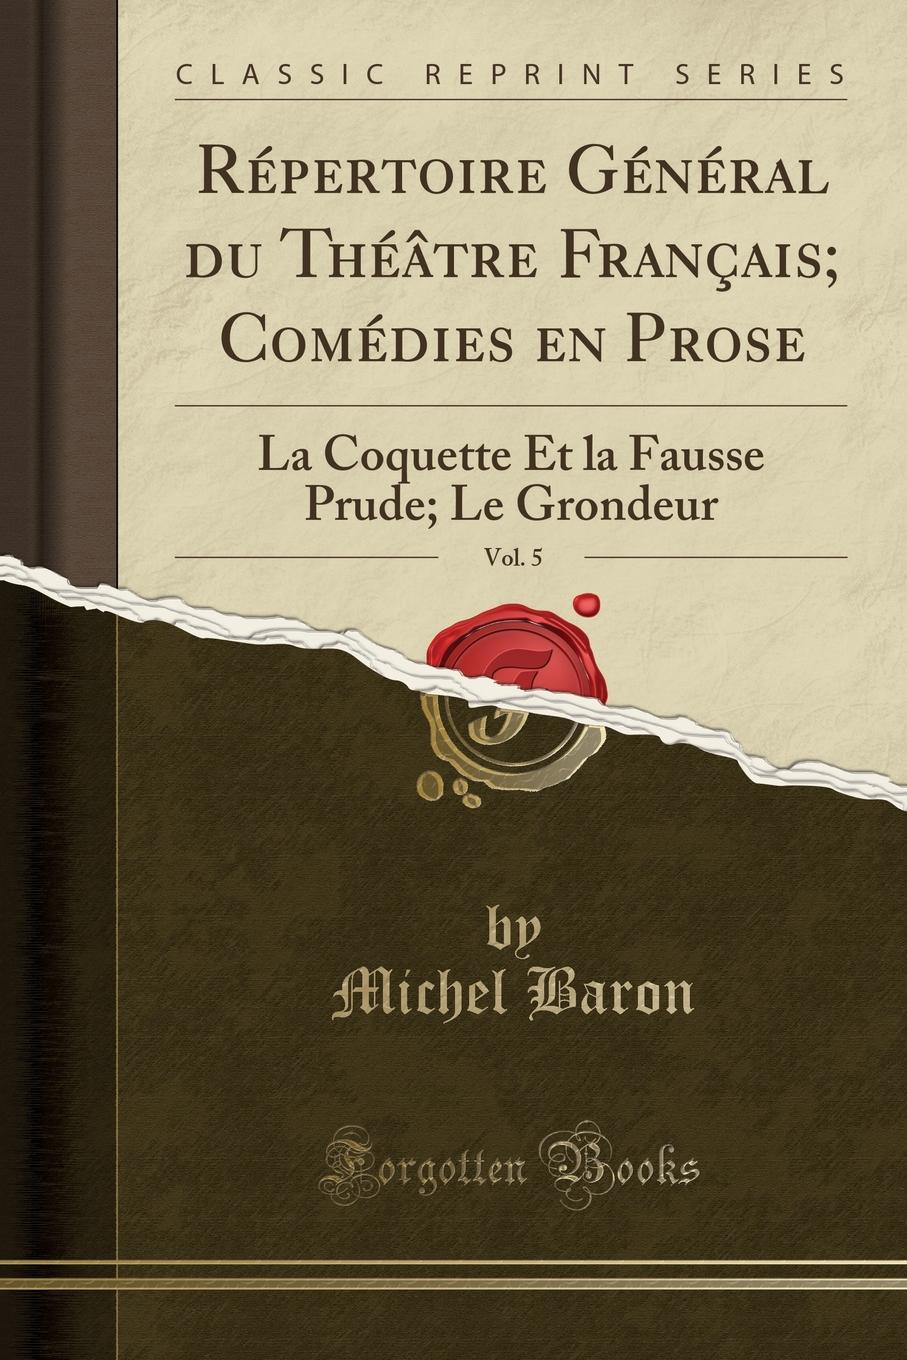 Repertoire General du Theatre Francais; Comedies en Prose, Vol. 5. La Coquette Et la Fausse Prude; Le Grondeur (Classic Reprint)